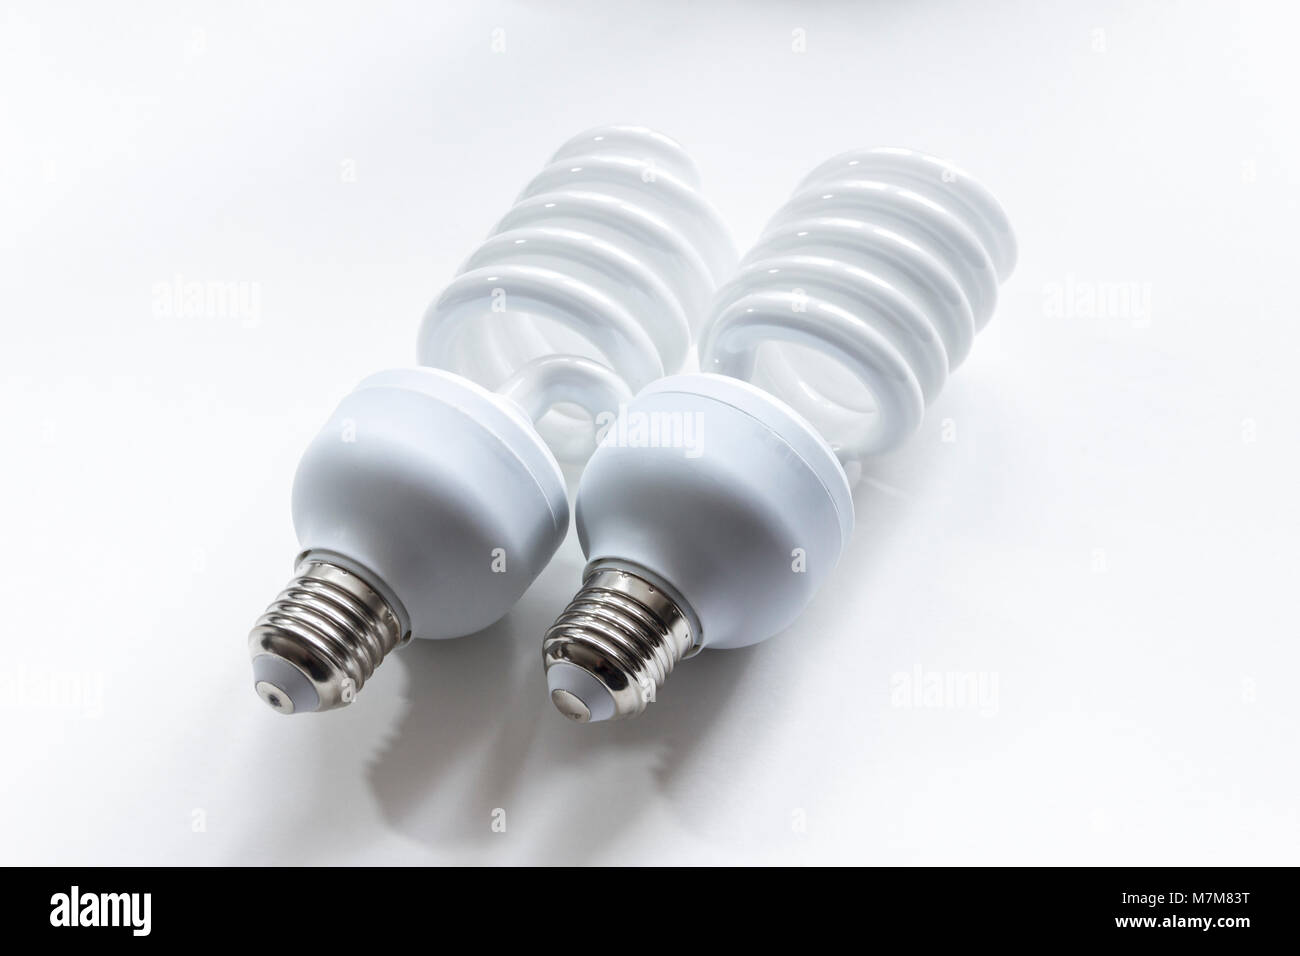 Efficacité énergétique deux fluorescent haute puissance ampoules photographique sur un fond blanc Banque D'Images